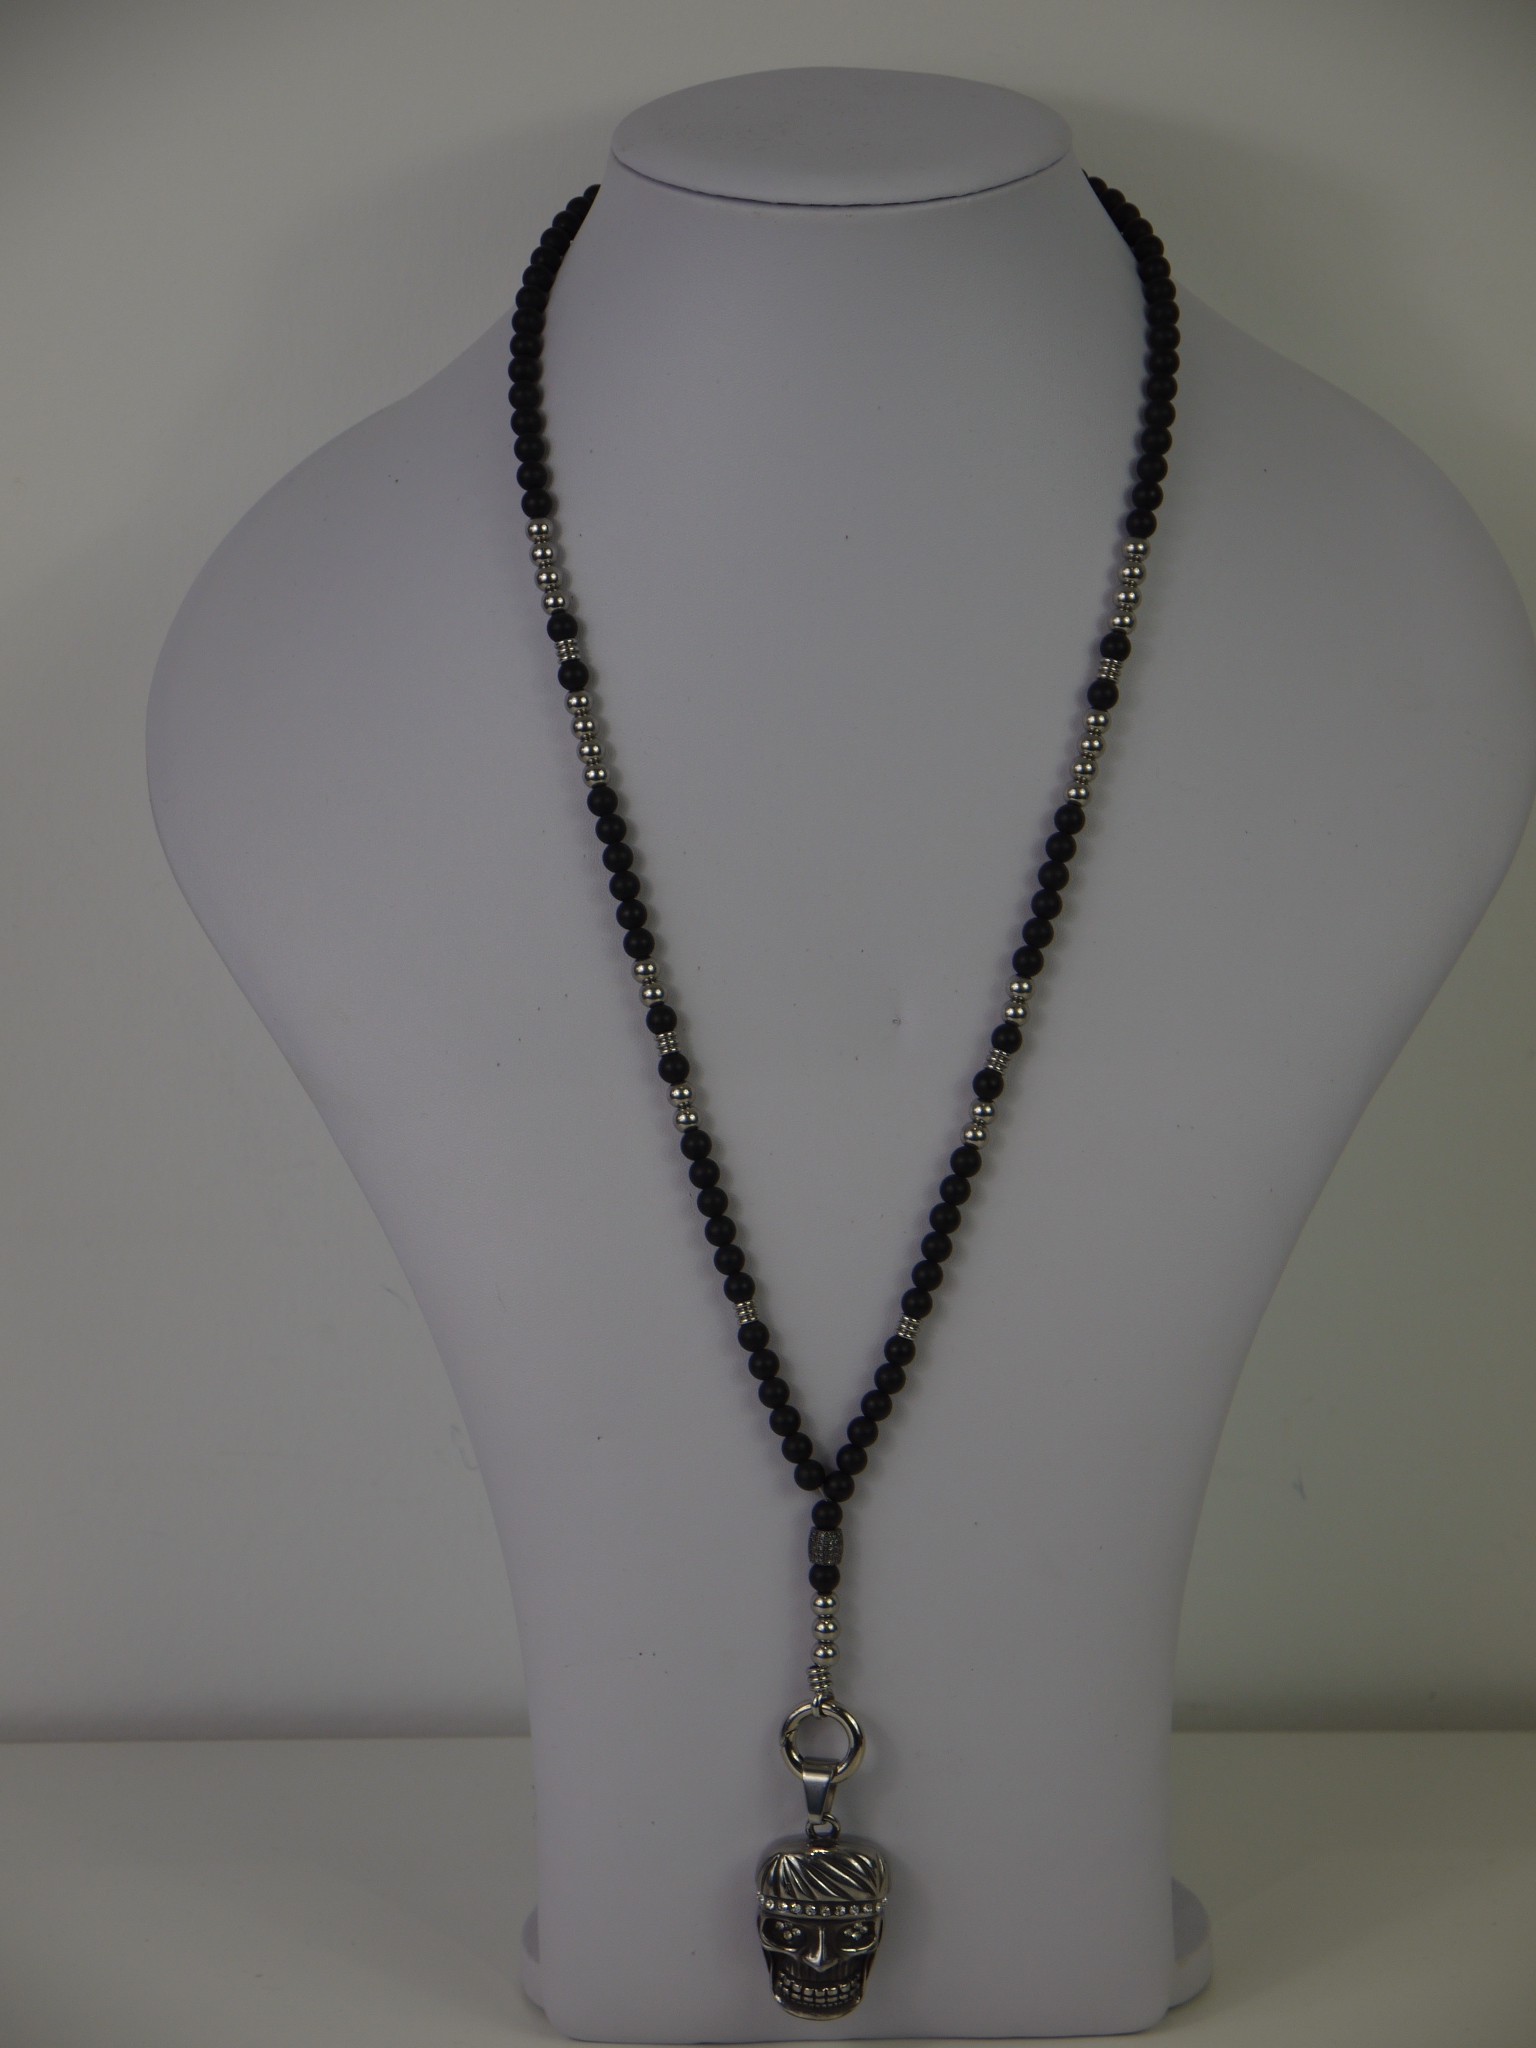 Halskette für Männer und Frauen mit Schwarz/Silbernen Onyxsteinen sowie  einem Totenkopfanhänger